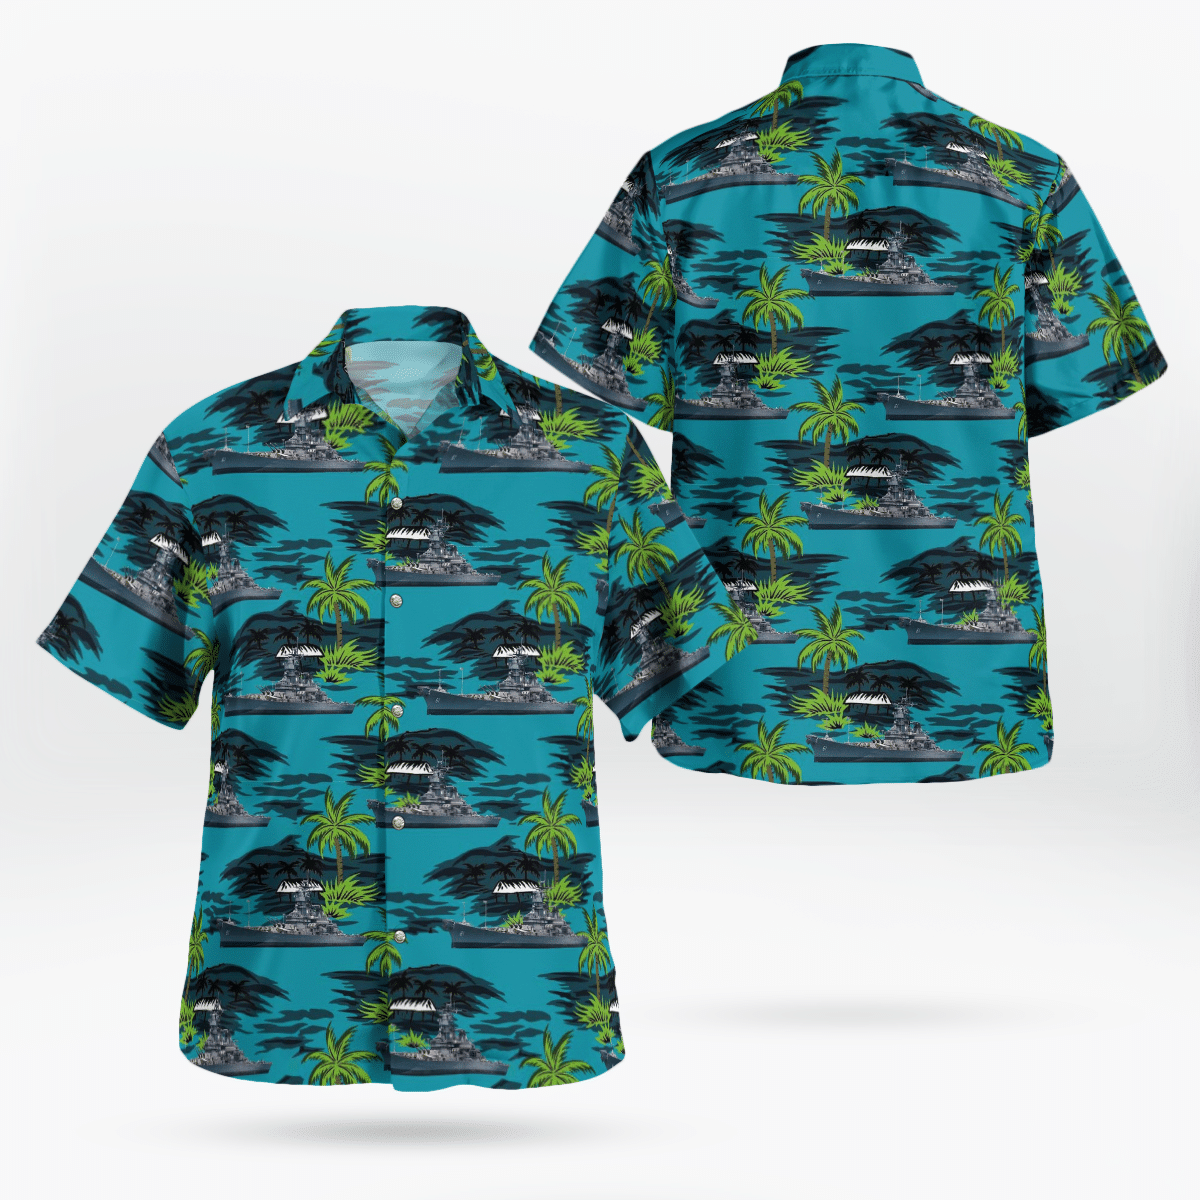 Best Hawaiian shirts 2022 180